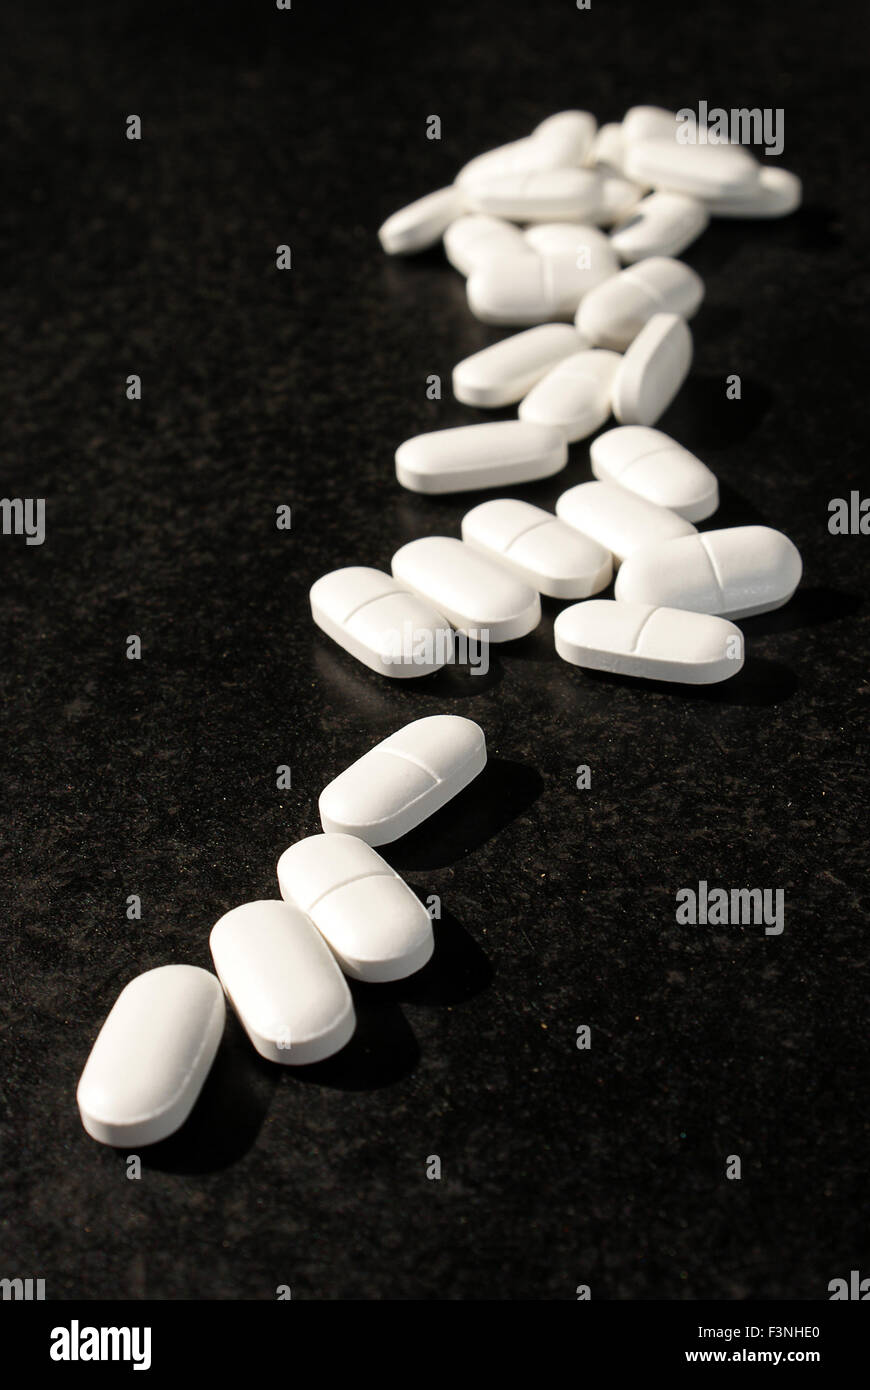 Un grand nombre de pilules sur ordonnance médicale Banque D'Images